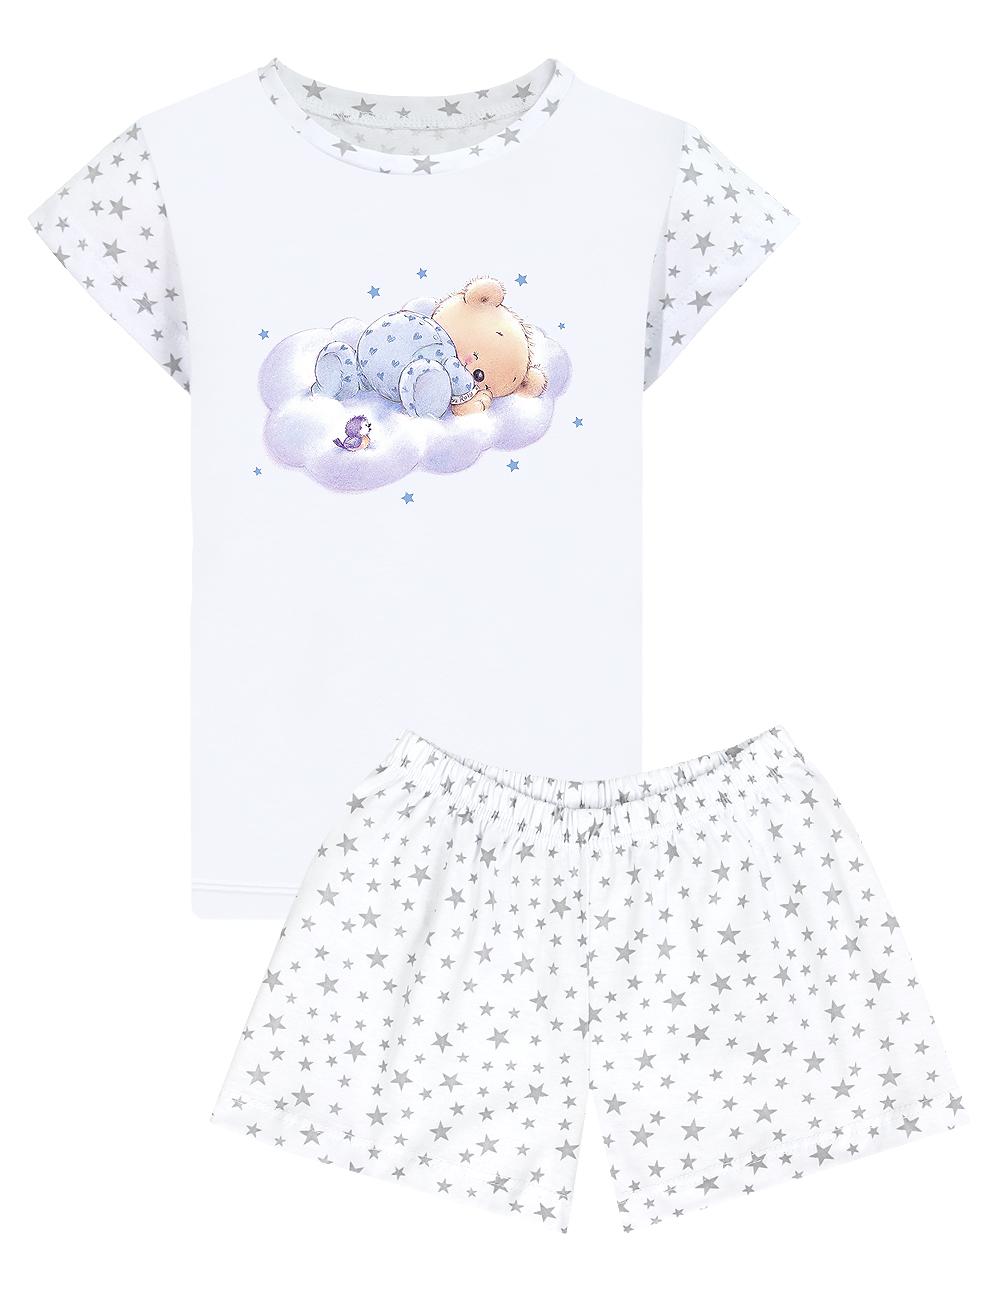 Пижама детская KETMIN МИШКА ТОПТЫЖКА цв.Белый (Футболка/Шорты)